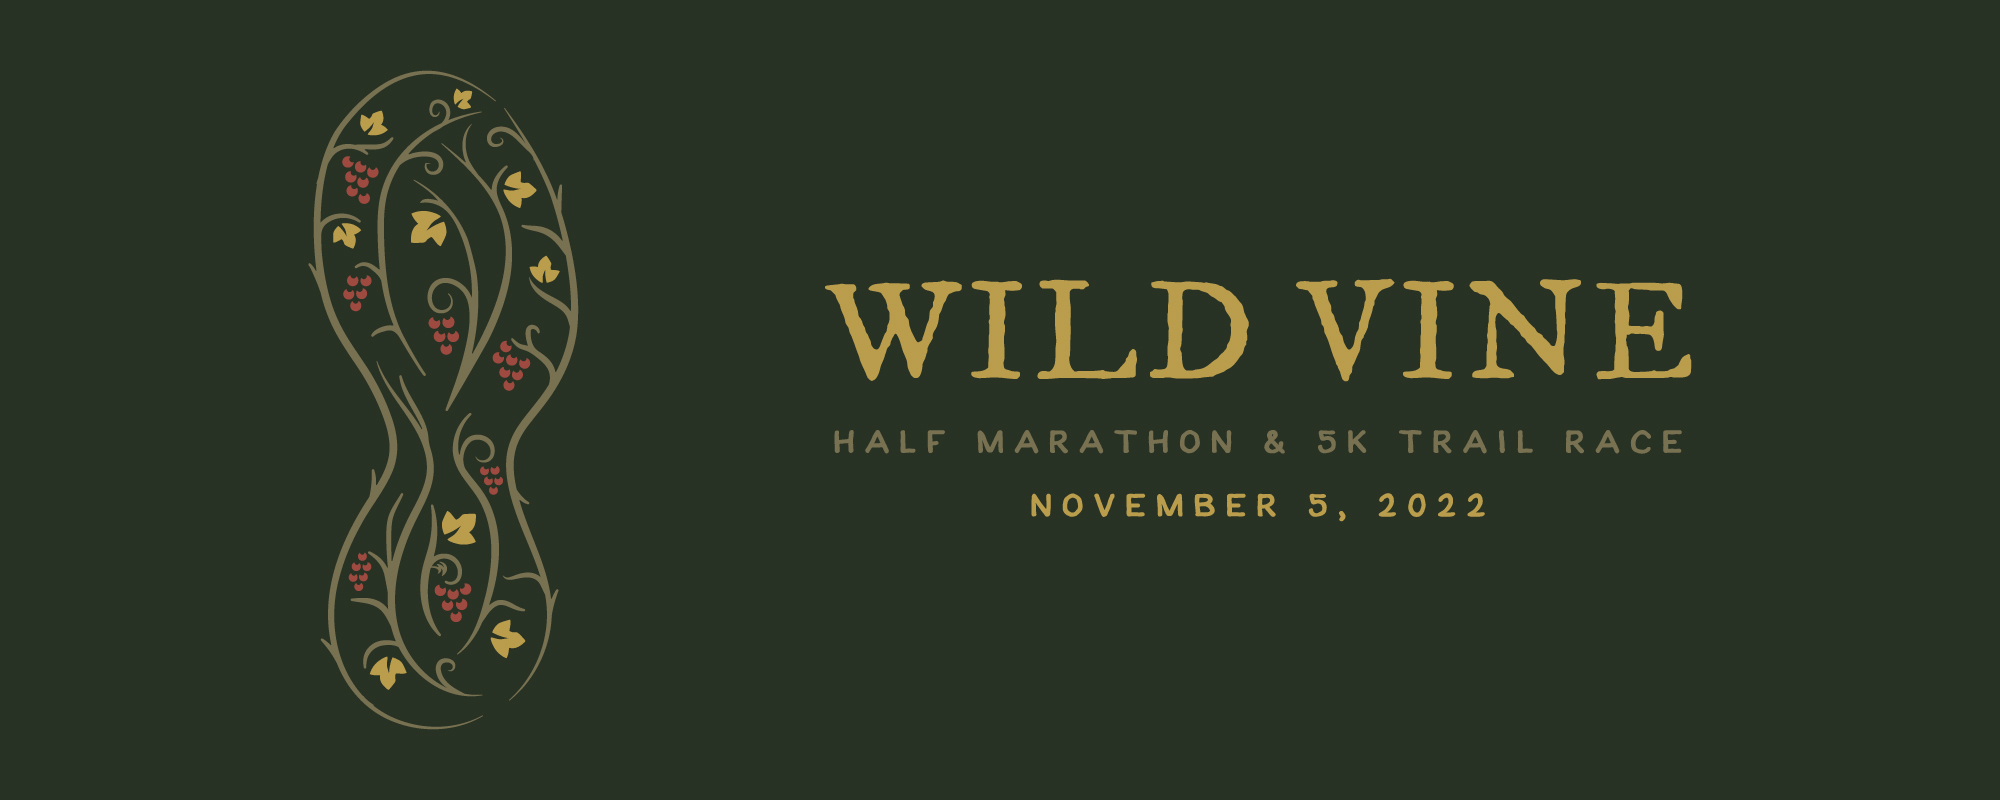 2022 Wild Vine Half Marathon